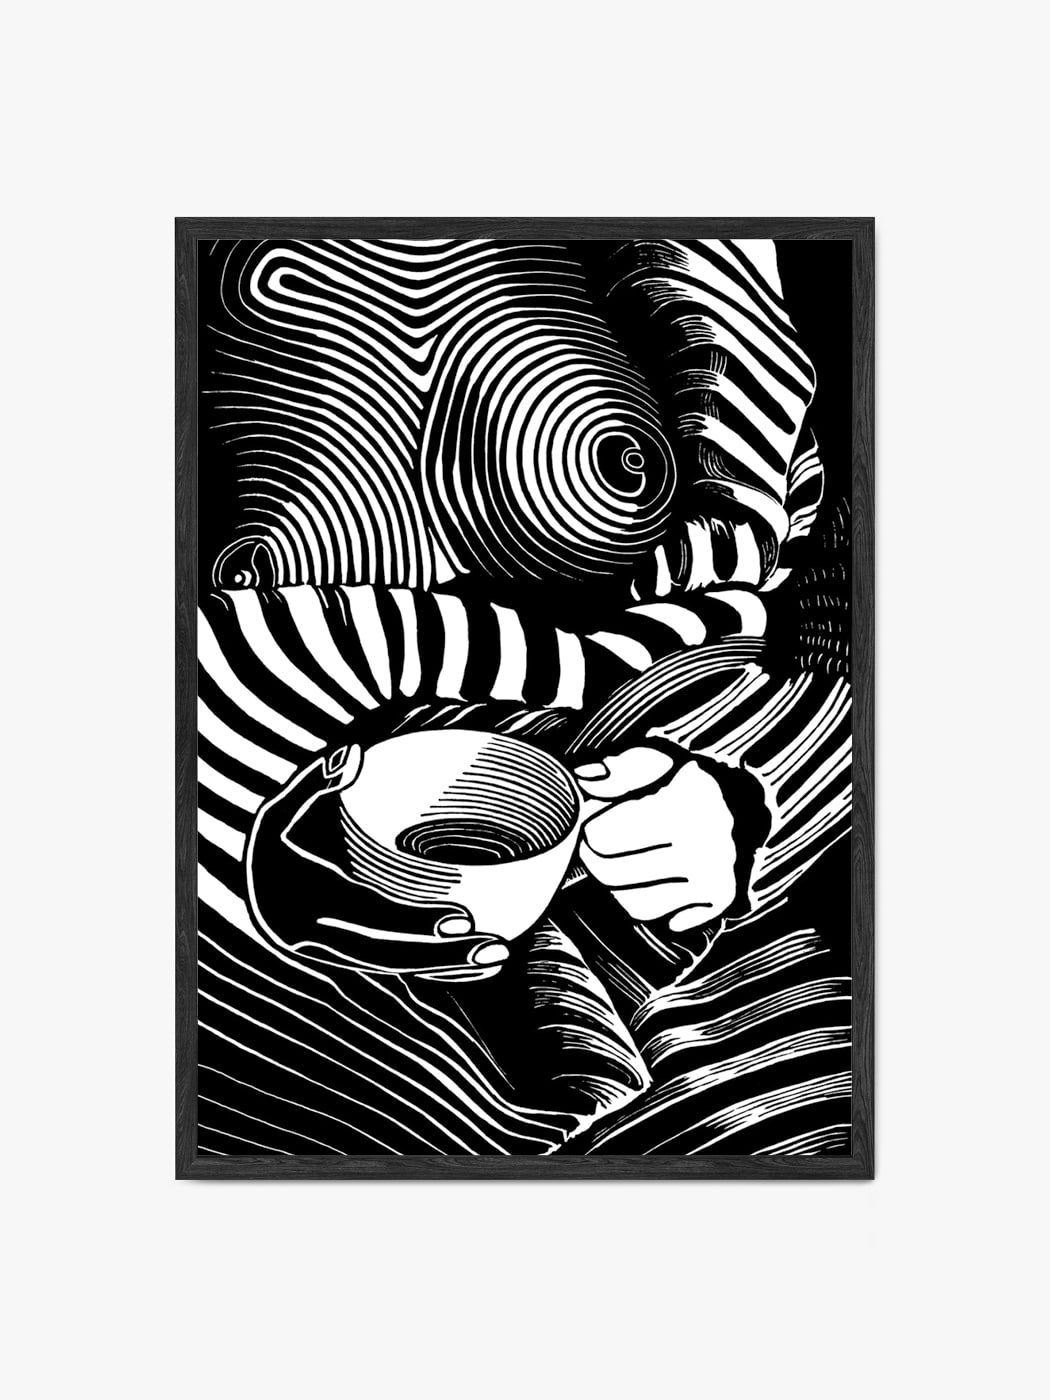 Czarno biała grafika przedstawiająca akt kobiecy autorstwa Marty Kozłowskiej w formie obrazu akustycznego dźwiękochłonnego w czarnej ramie